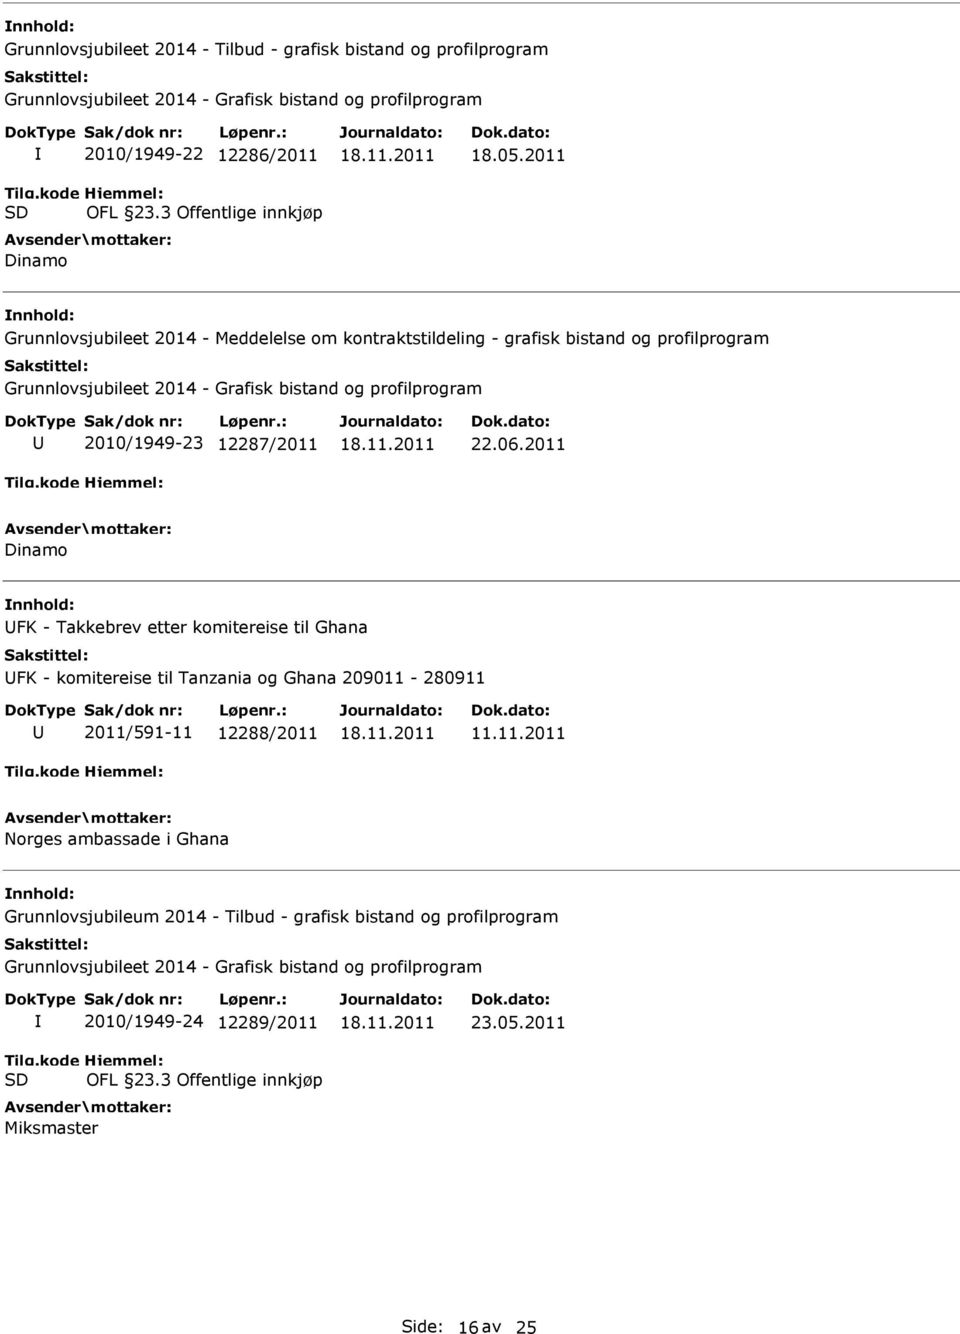 2011 Grunnlovsjubileet 2014 - Meddelelse om kontraktstildeling - grafisk bistand og profilprogram Grunnlovsjubileet 2014 - Grafisk bistand og profilprogram 2010/1949-23 12287/2011 22.06.